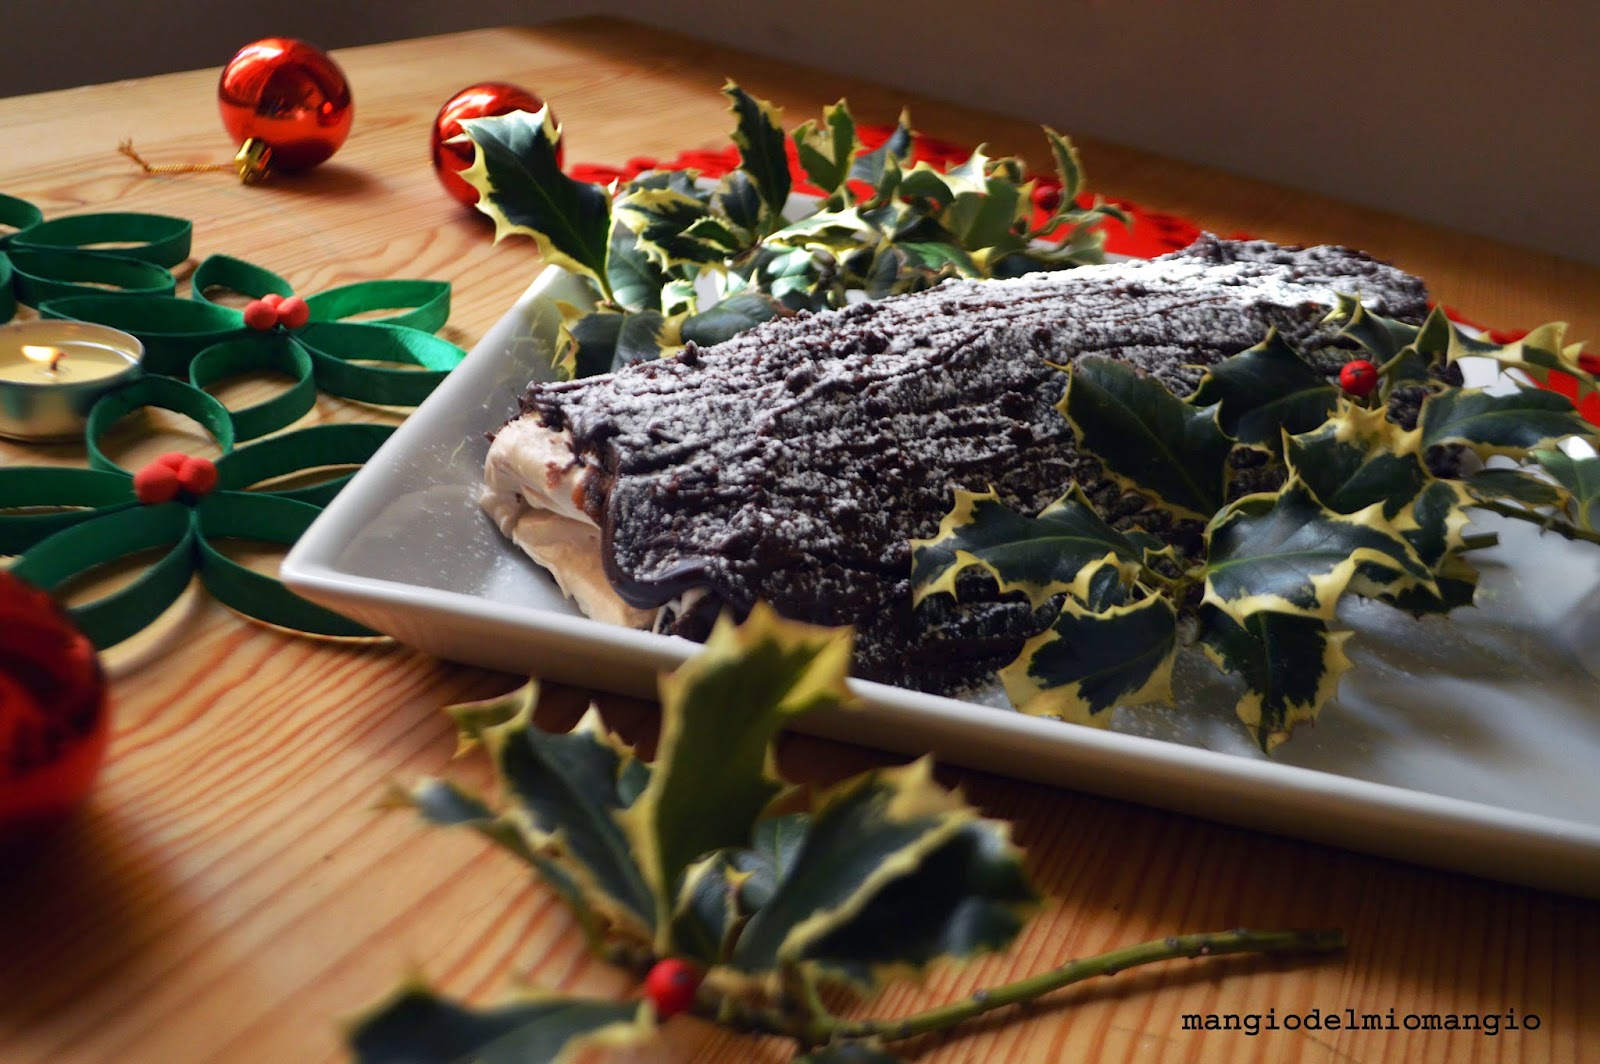 Tronchetto Di Natale Castagne.Mangio Del Mio Mangio Tronchetto Di Natale Con Castagne E Cioccolato